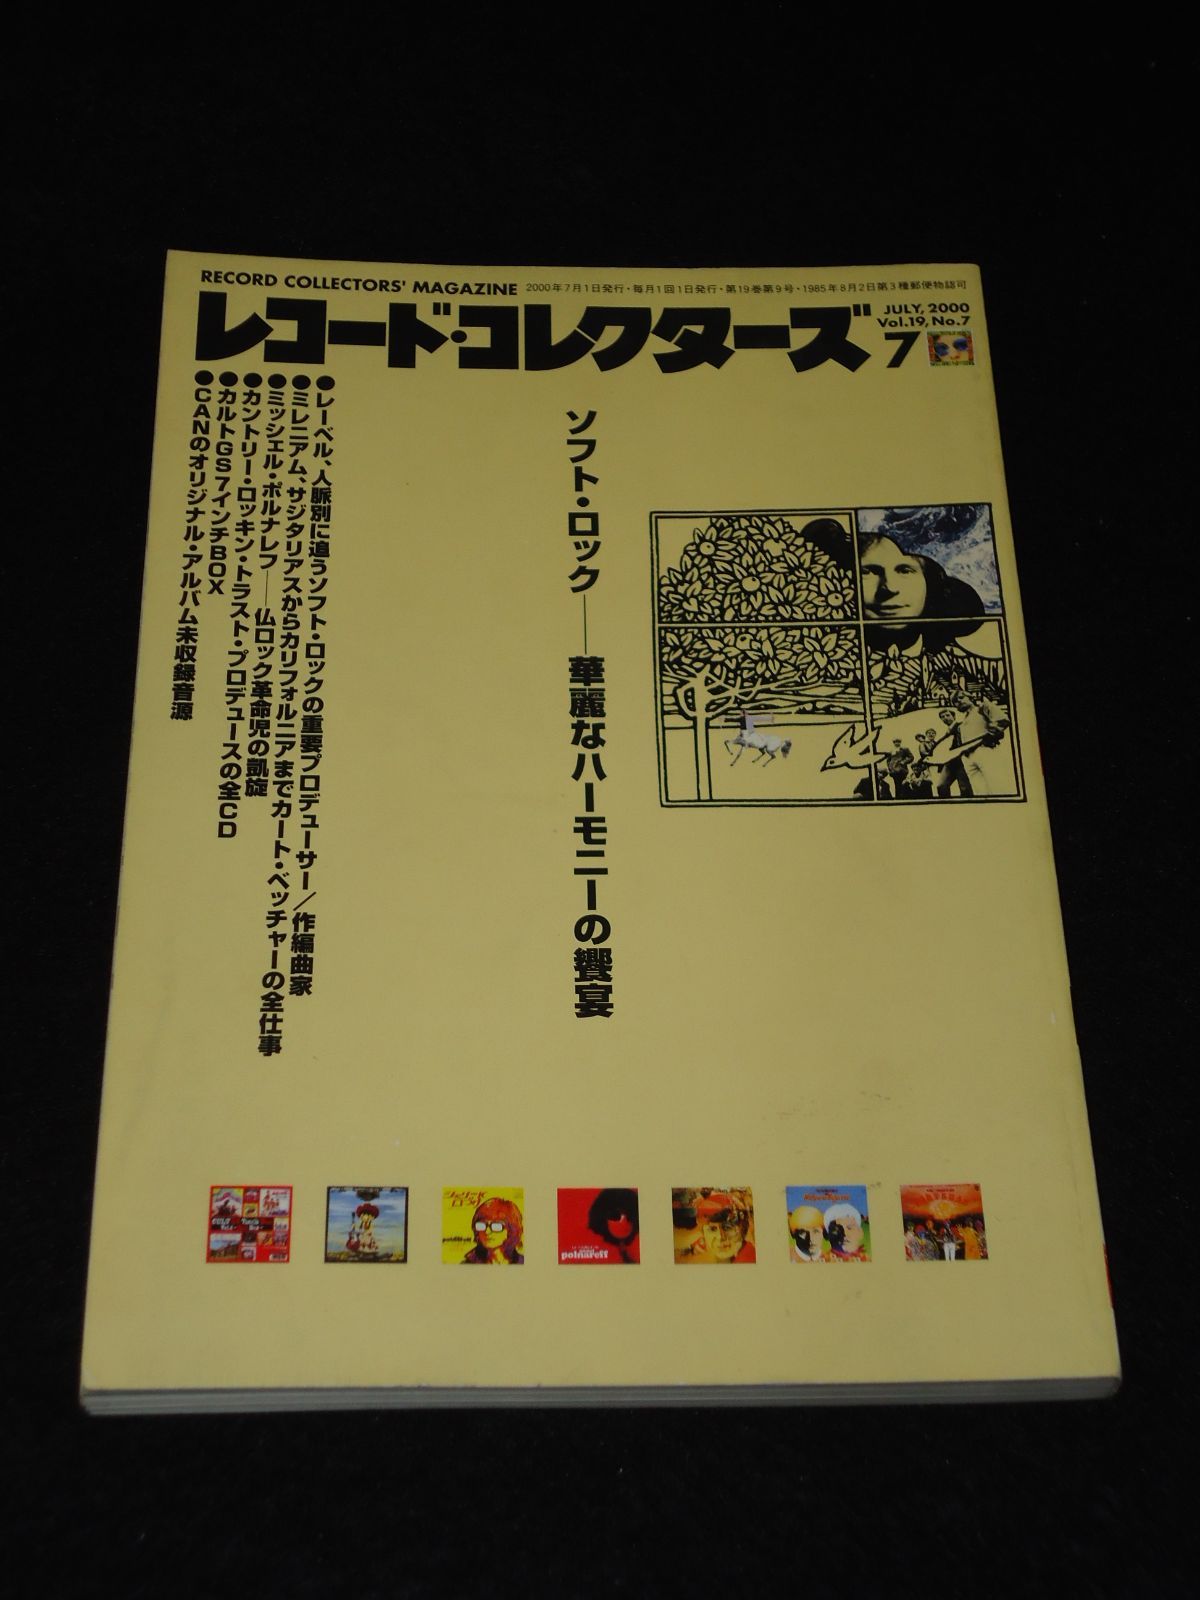 通巻214号　Vol.19,No.7　メルカリ　レコード・コレクターズ　2000年7月